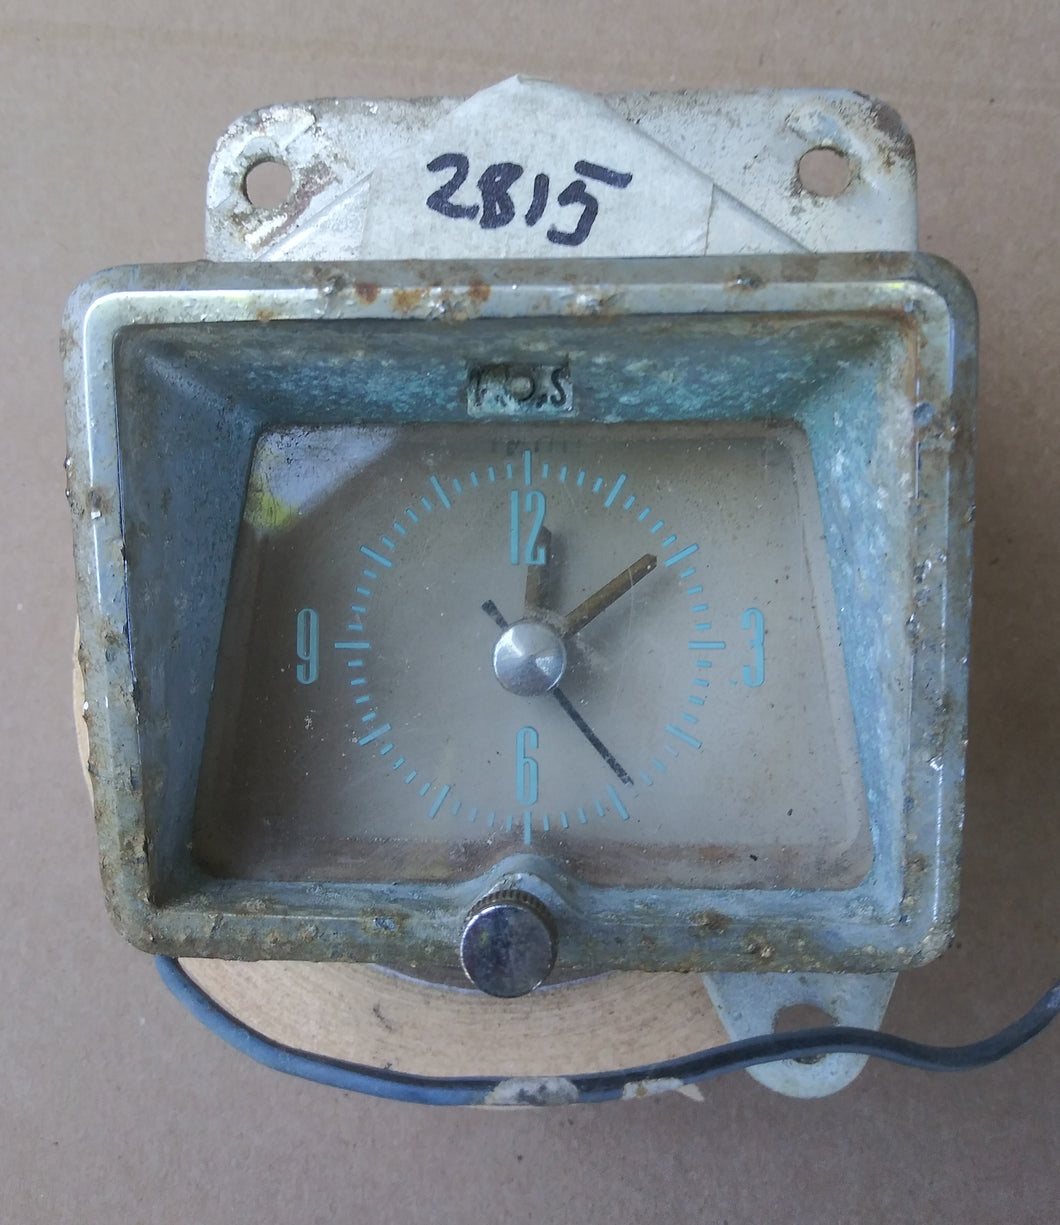 1956 Mercury Montclair dash clock